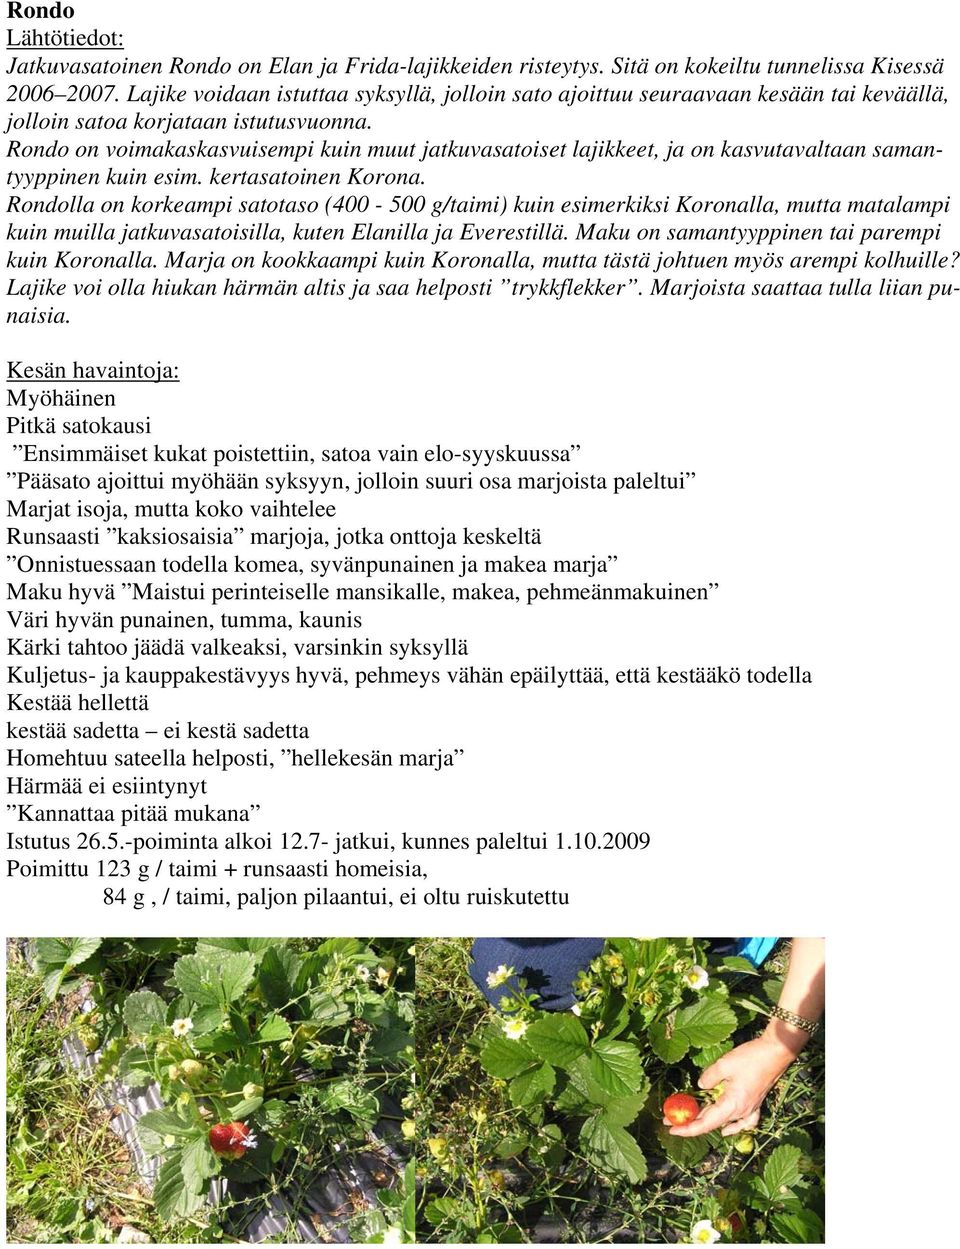 Rondo on voimakaskasvuisempi kuin muut jatkuvasatoiset lajikkeet, ja on kasvutavaltaan samantyyppinen kuin esim. kertasatoinen Korona.